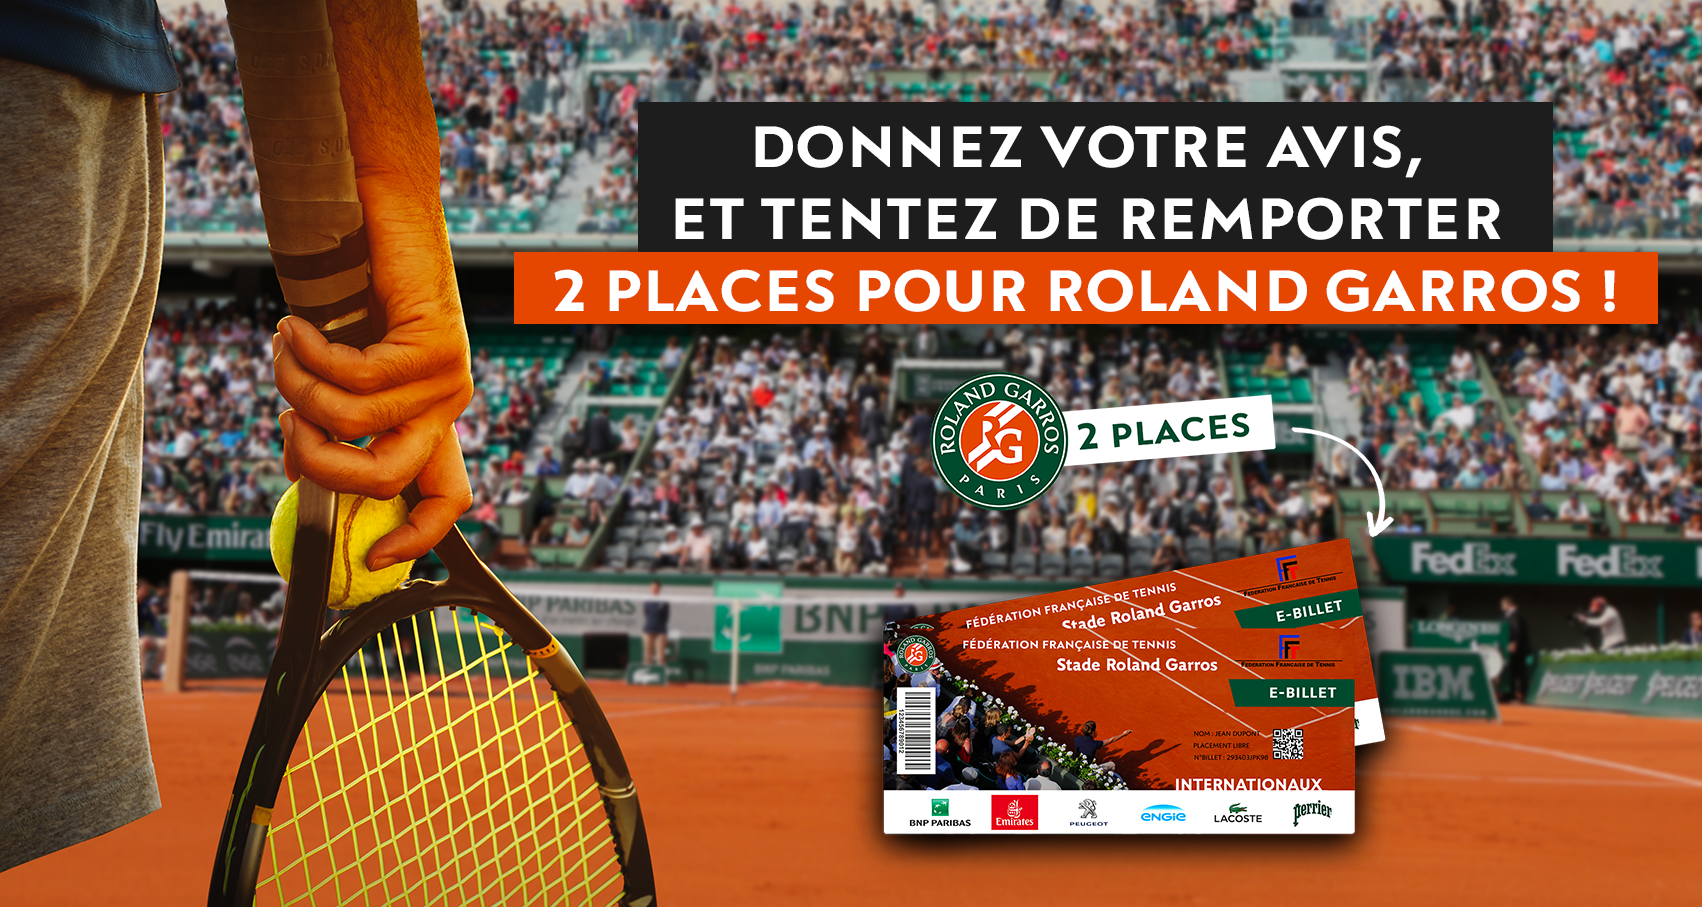 Donnez votre avis, et tentez de remporter 2 places pour Rolland Garros !